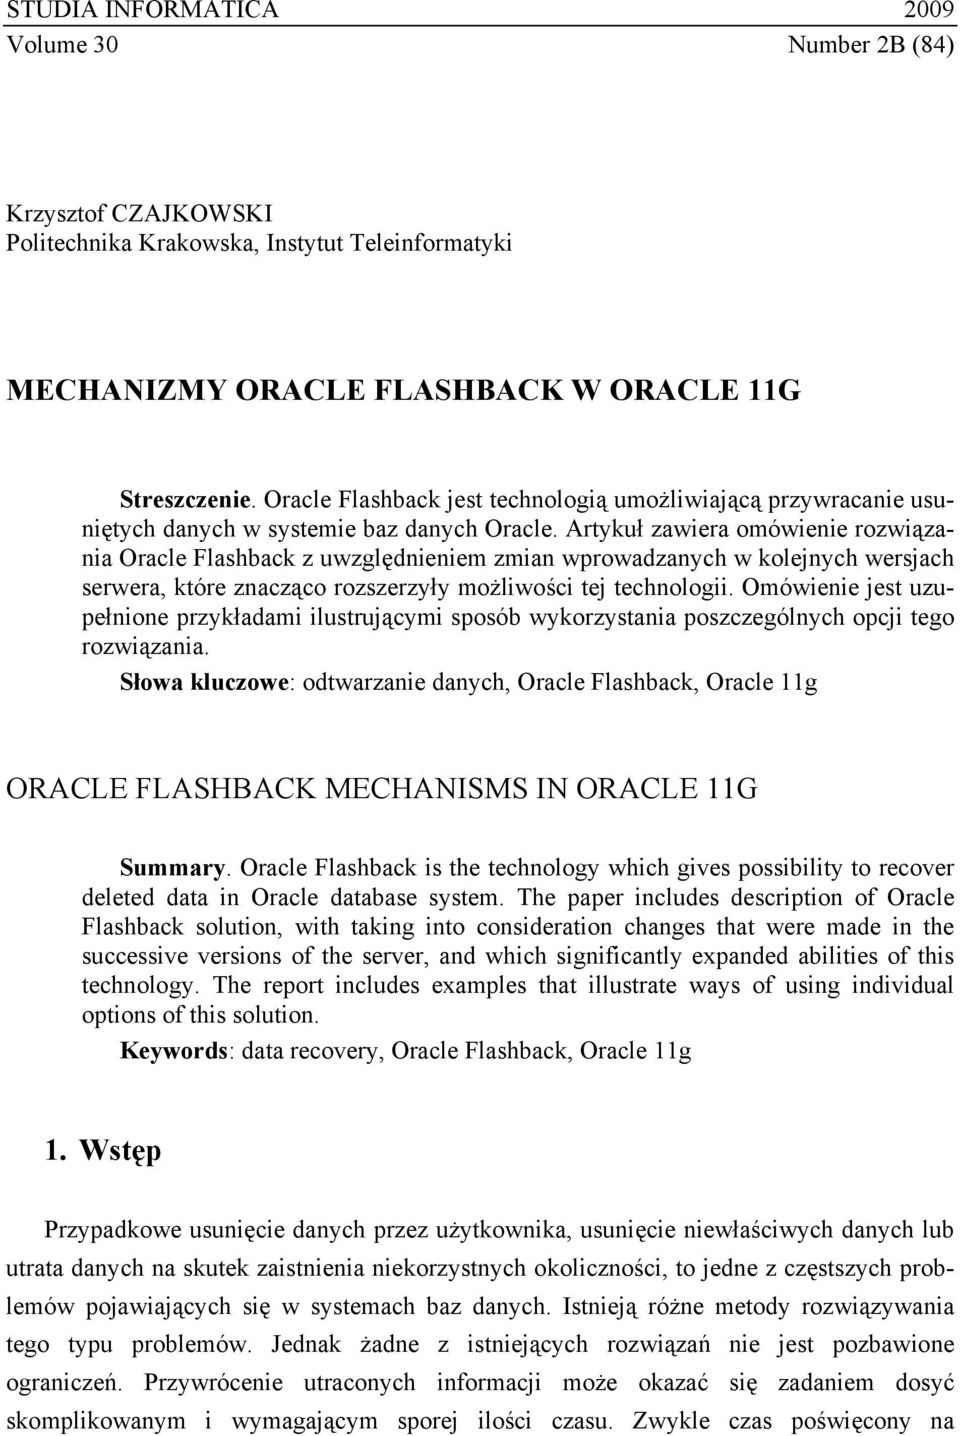 Artykuł zawiera omówienie rozwiązania Oracle Flashback z uwzględnieniem zmian wprowadzanych w kolejnych wersjach serwera, które znacząco rozszerzyły możliwości tej technologii.